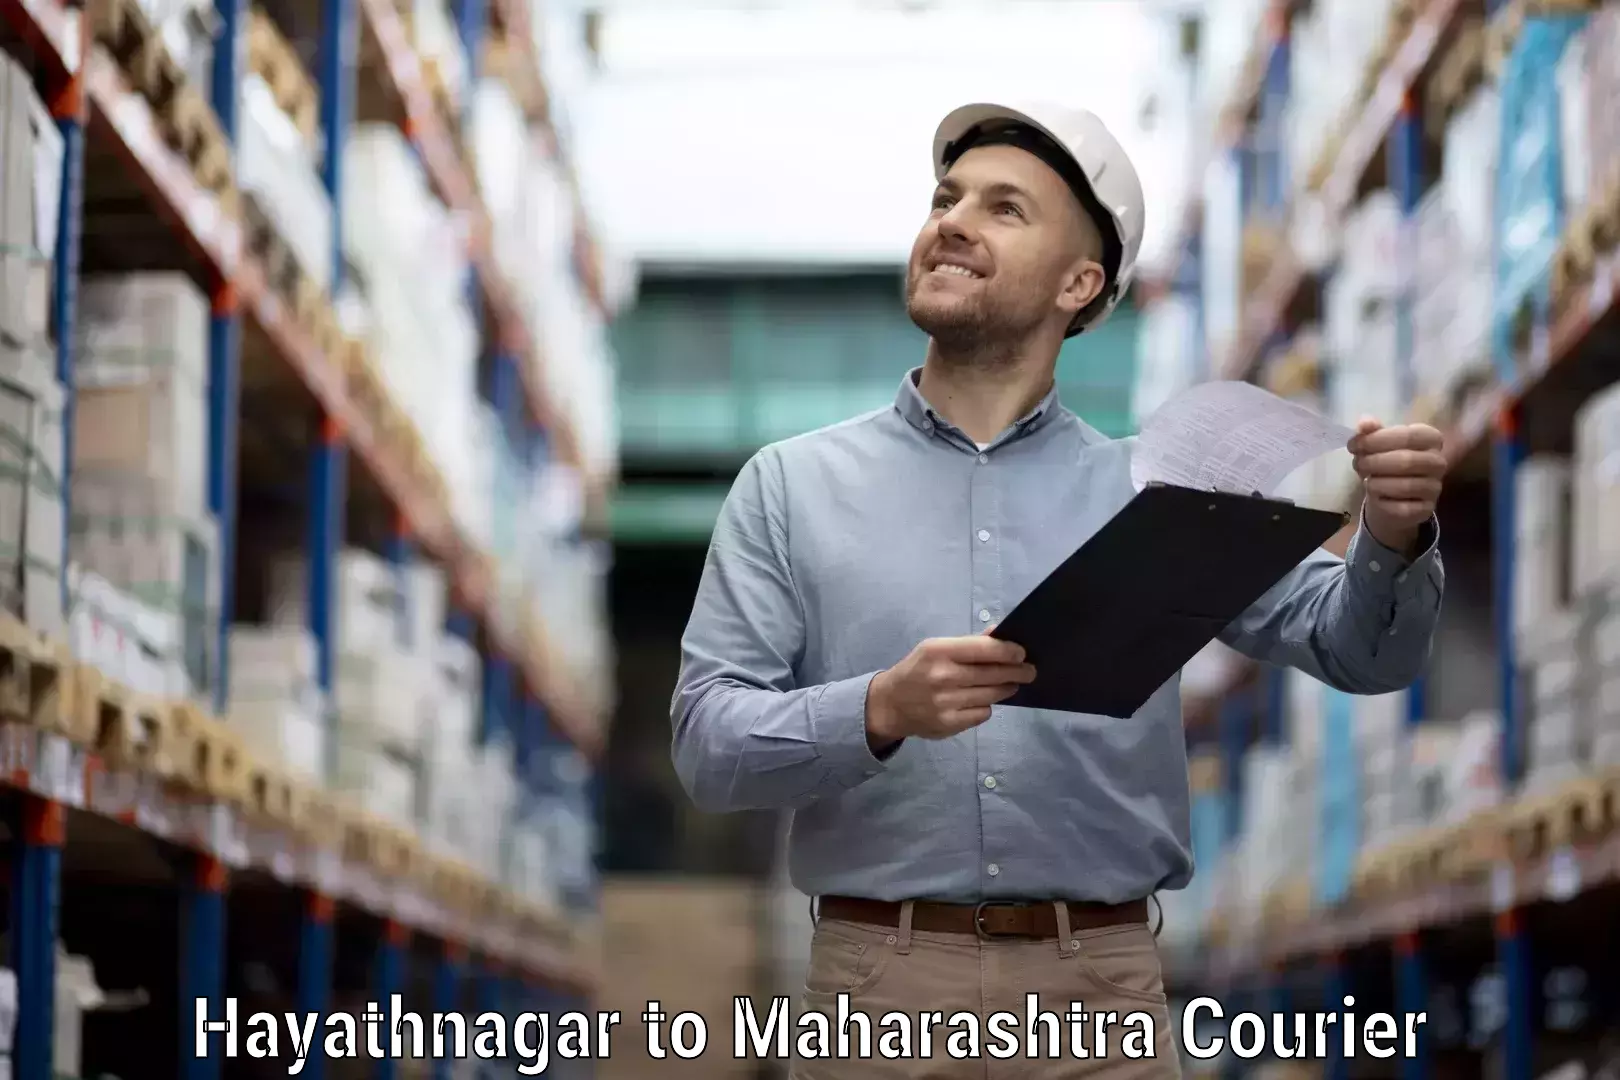 International courier networks Hayathnagar to Chandrapur